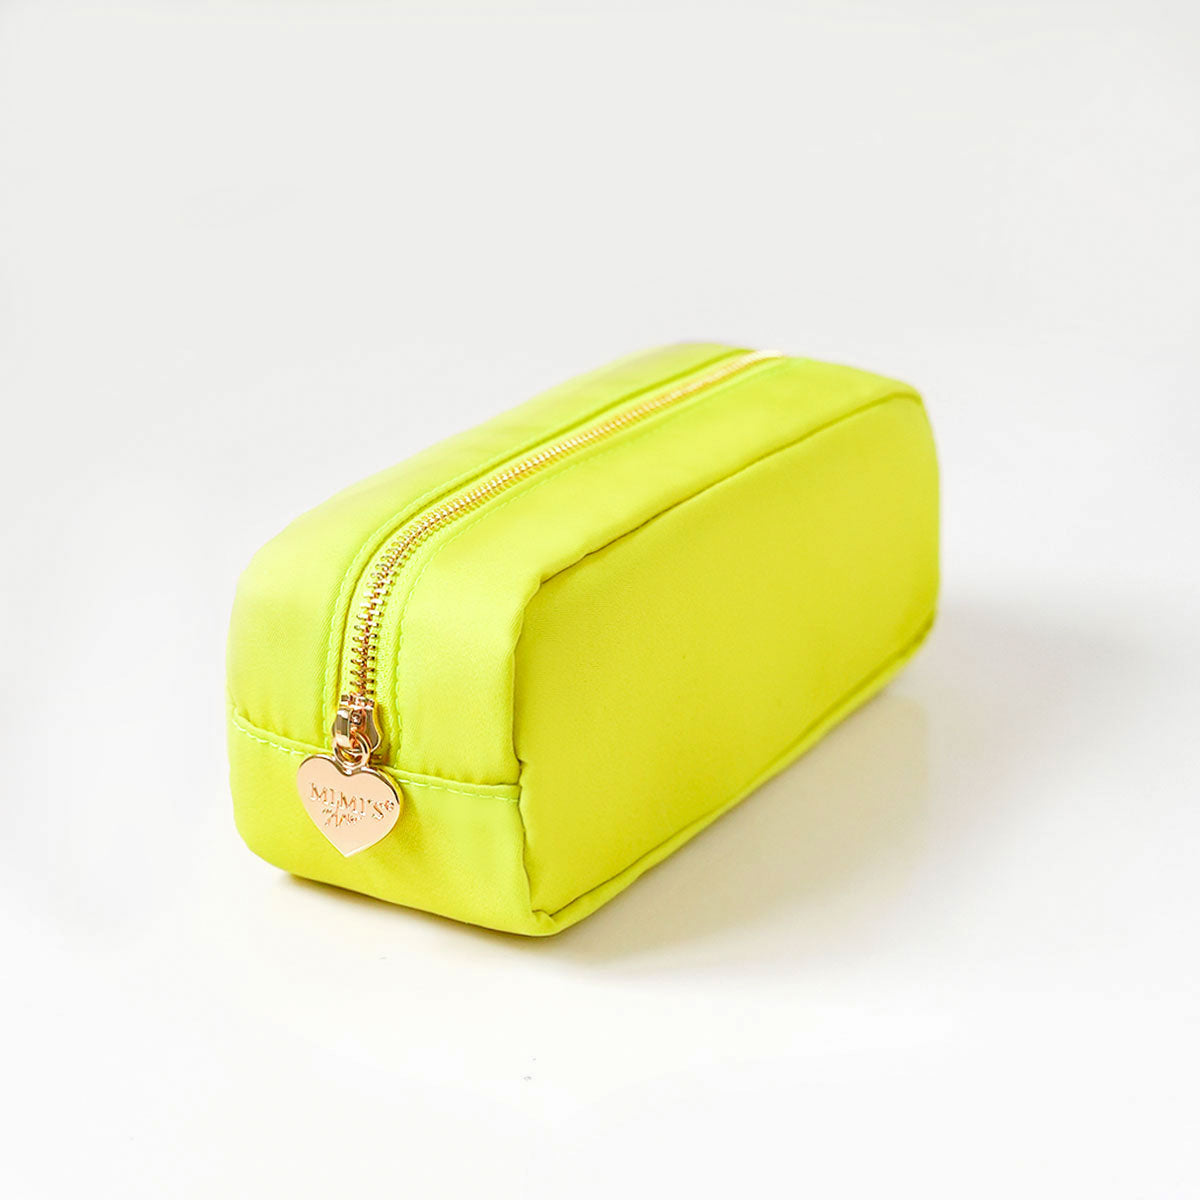 Taschen-Set Nr. 3 Lime Gelb (2 Taschen)